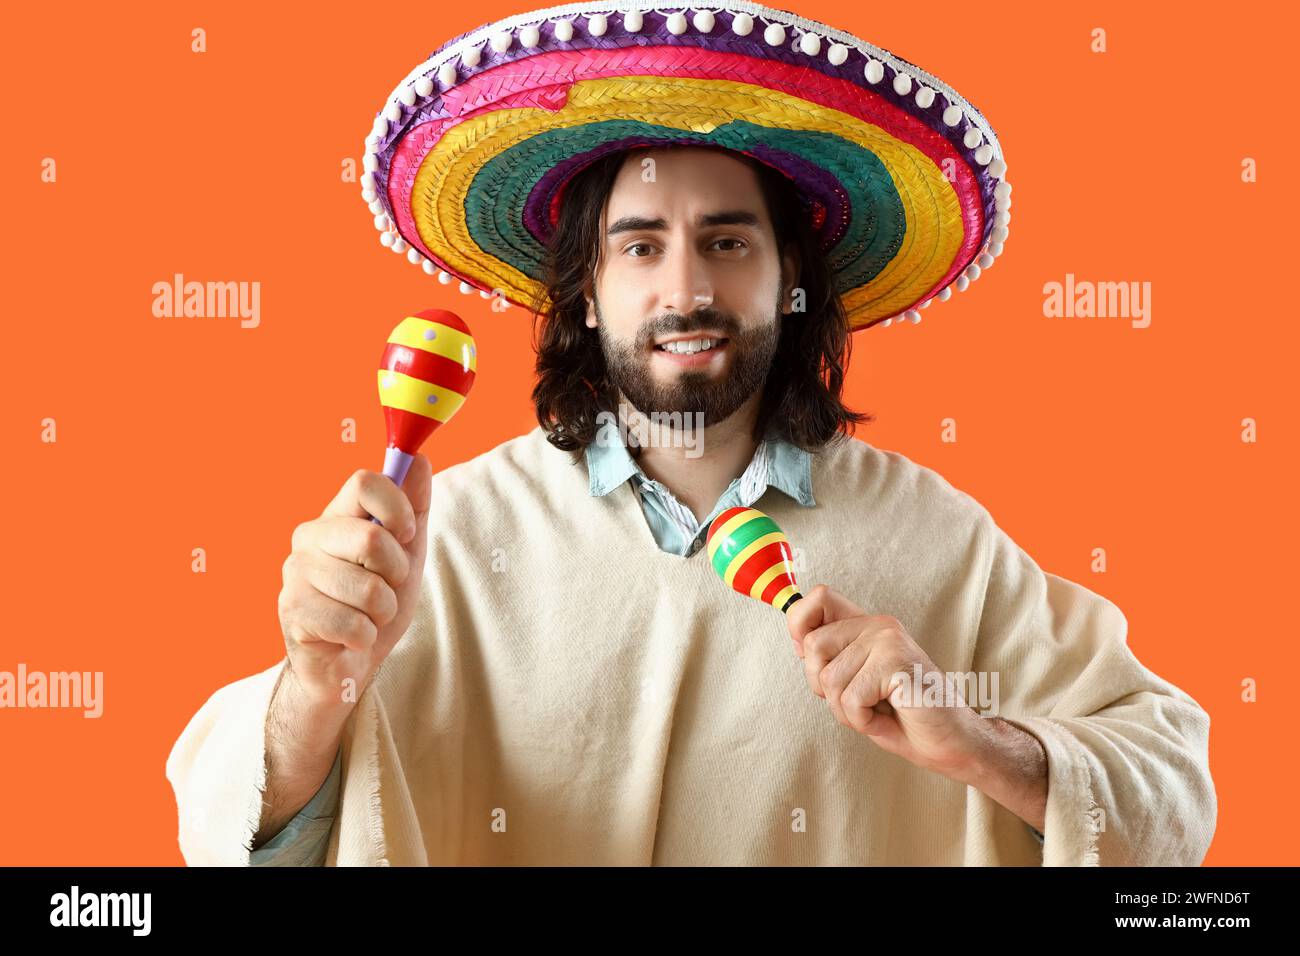 Beau jeune homme mexicain en sombrero et poncho jouant des maracas sur fond orange Banque D'Images